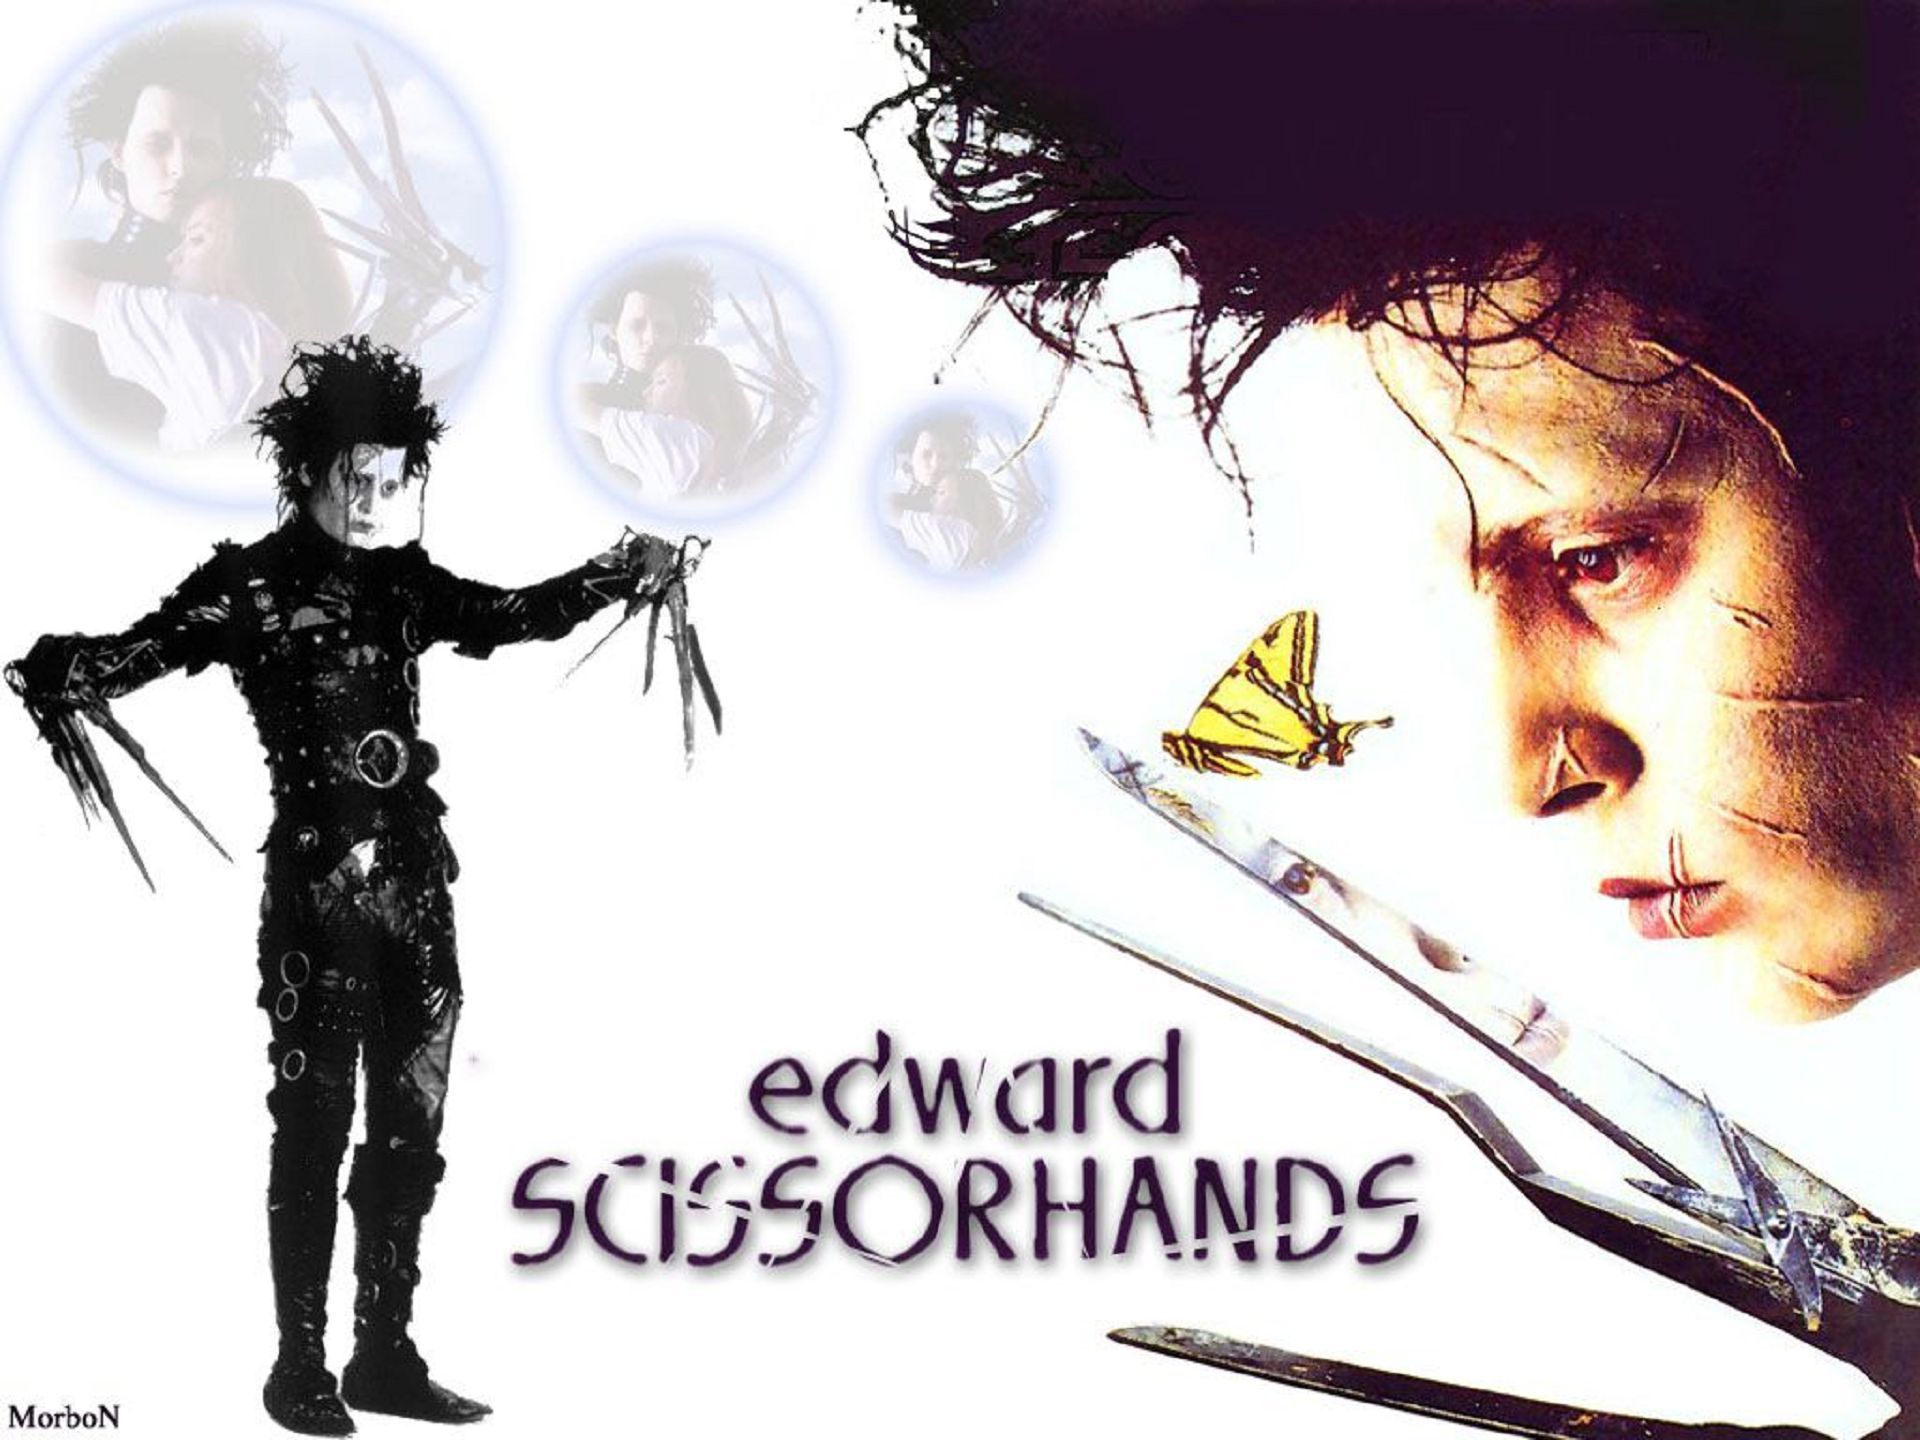 Edward Scissorhands Wallpapers HD | PixelsTalk.Net1920 x 1440